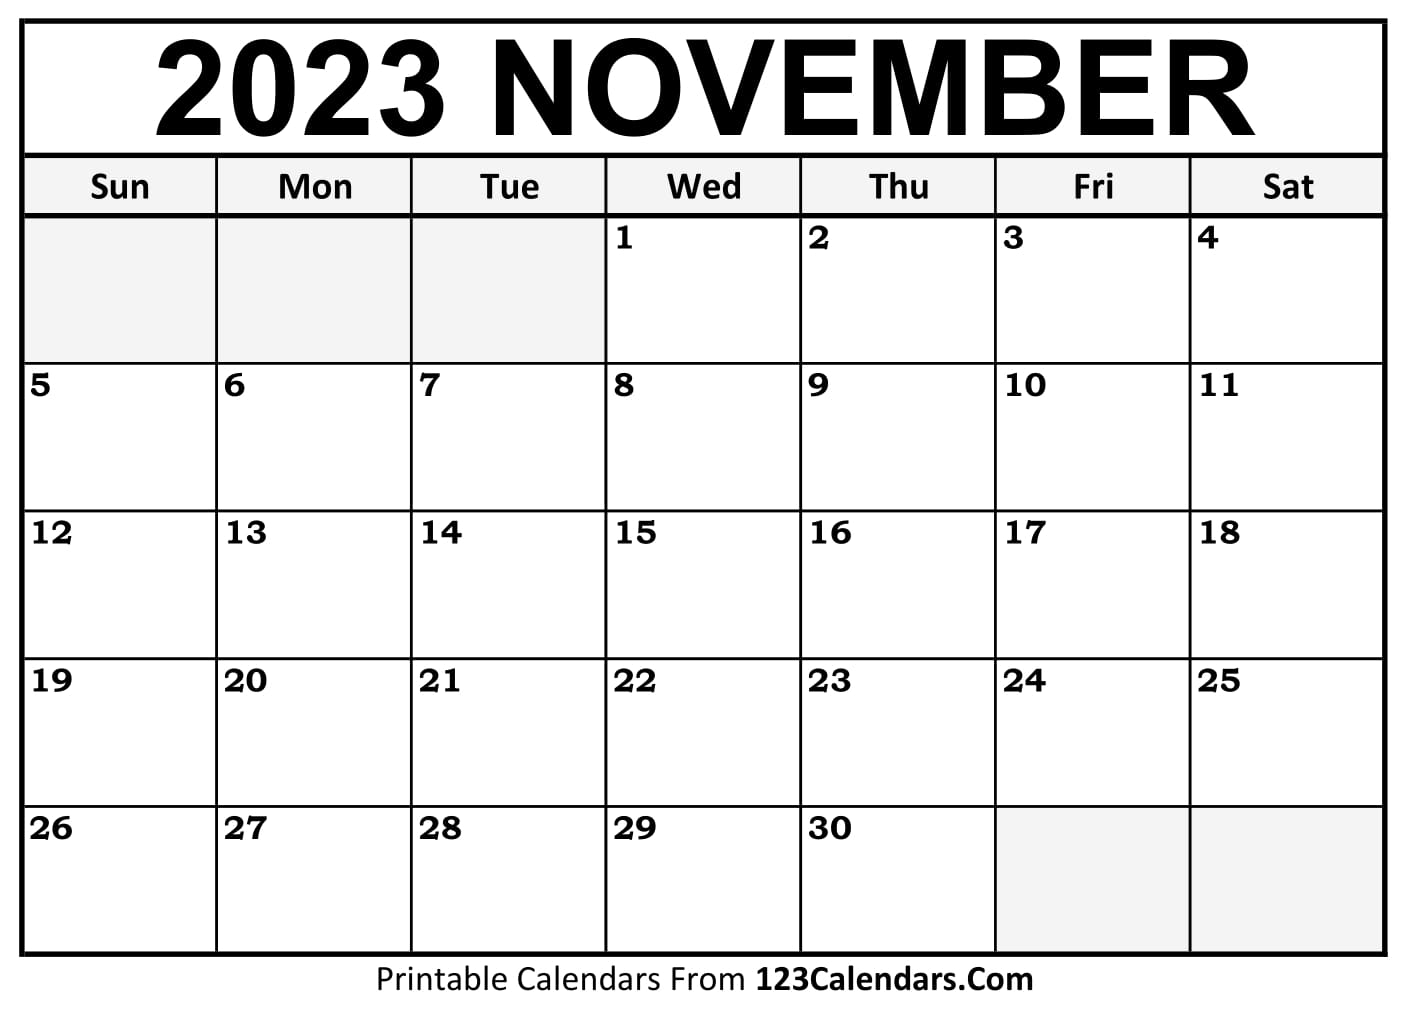 Printable November 2023 Calendar Templates 123Calendars com